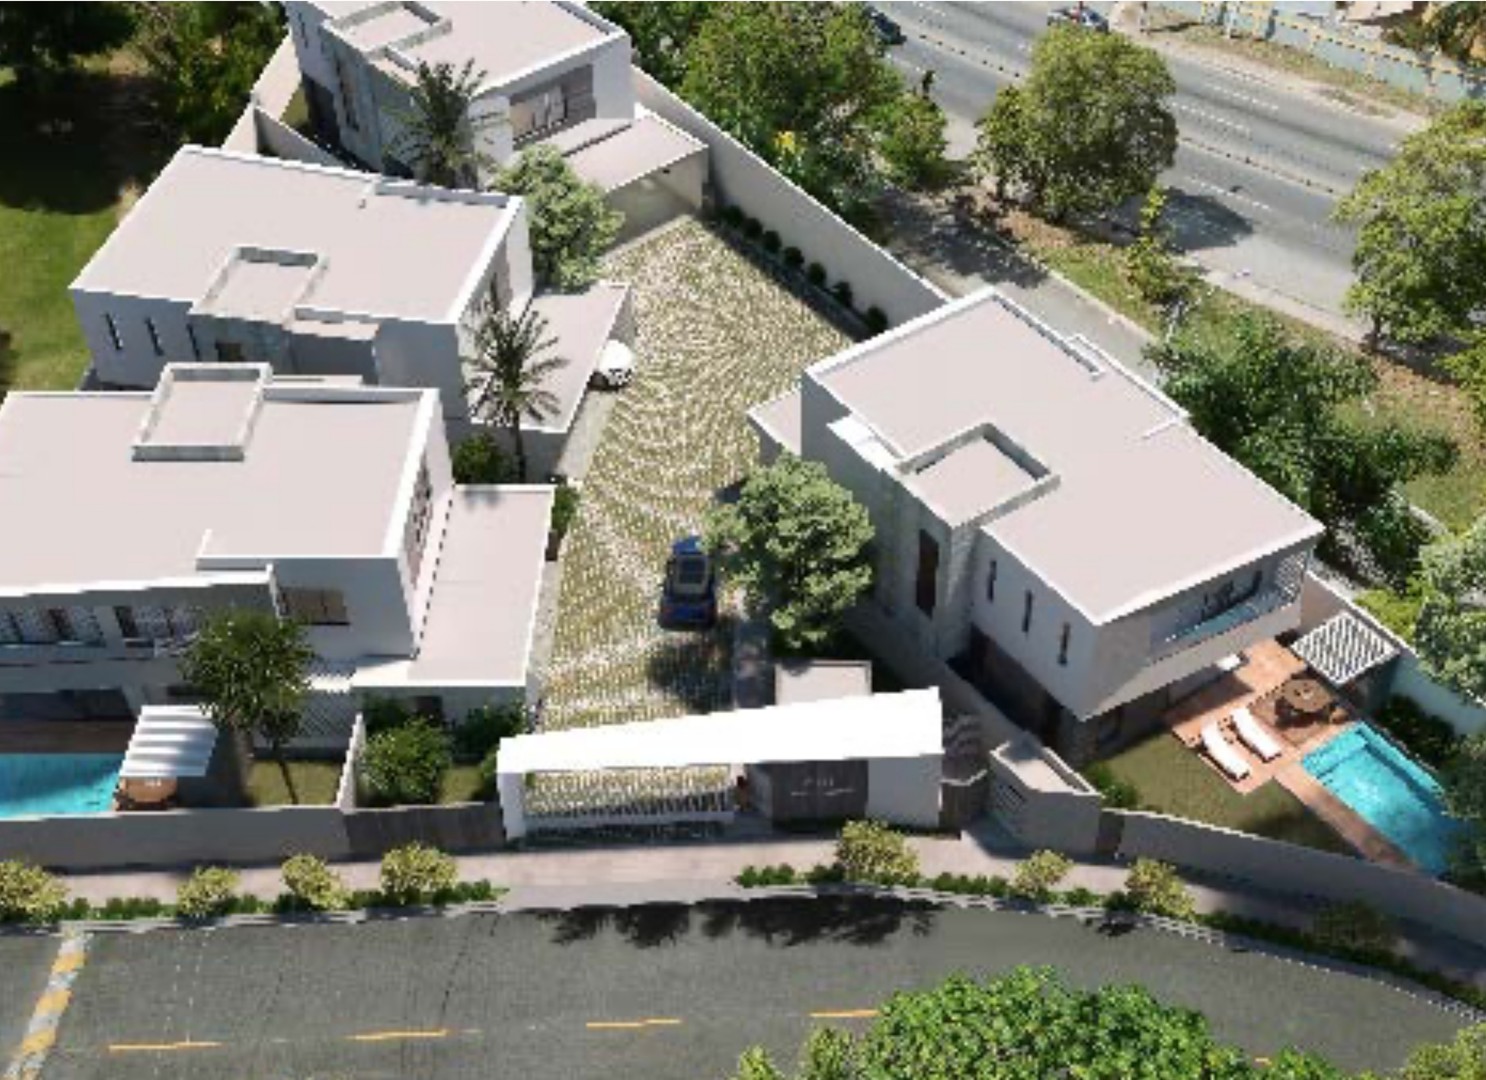 casas - Casas proyecto cerrado en Cuesta Hermosa II, en planos  5